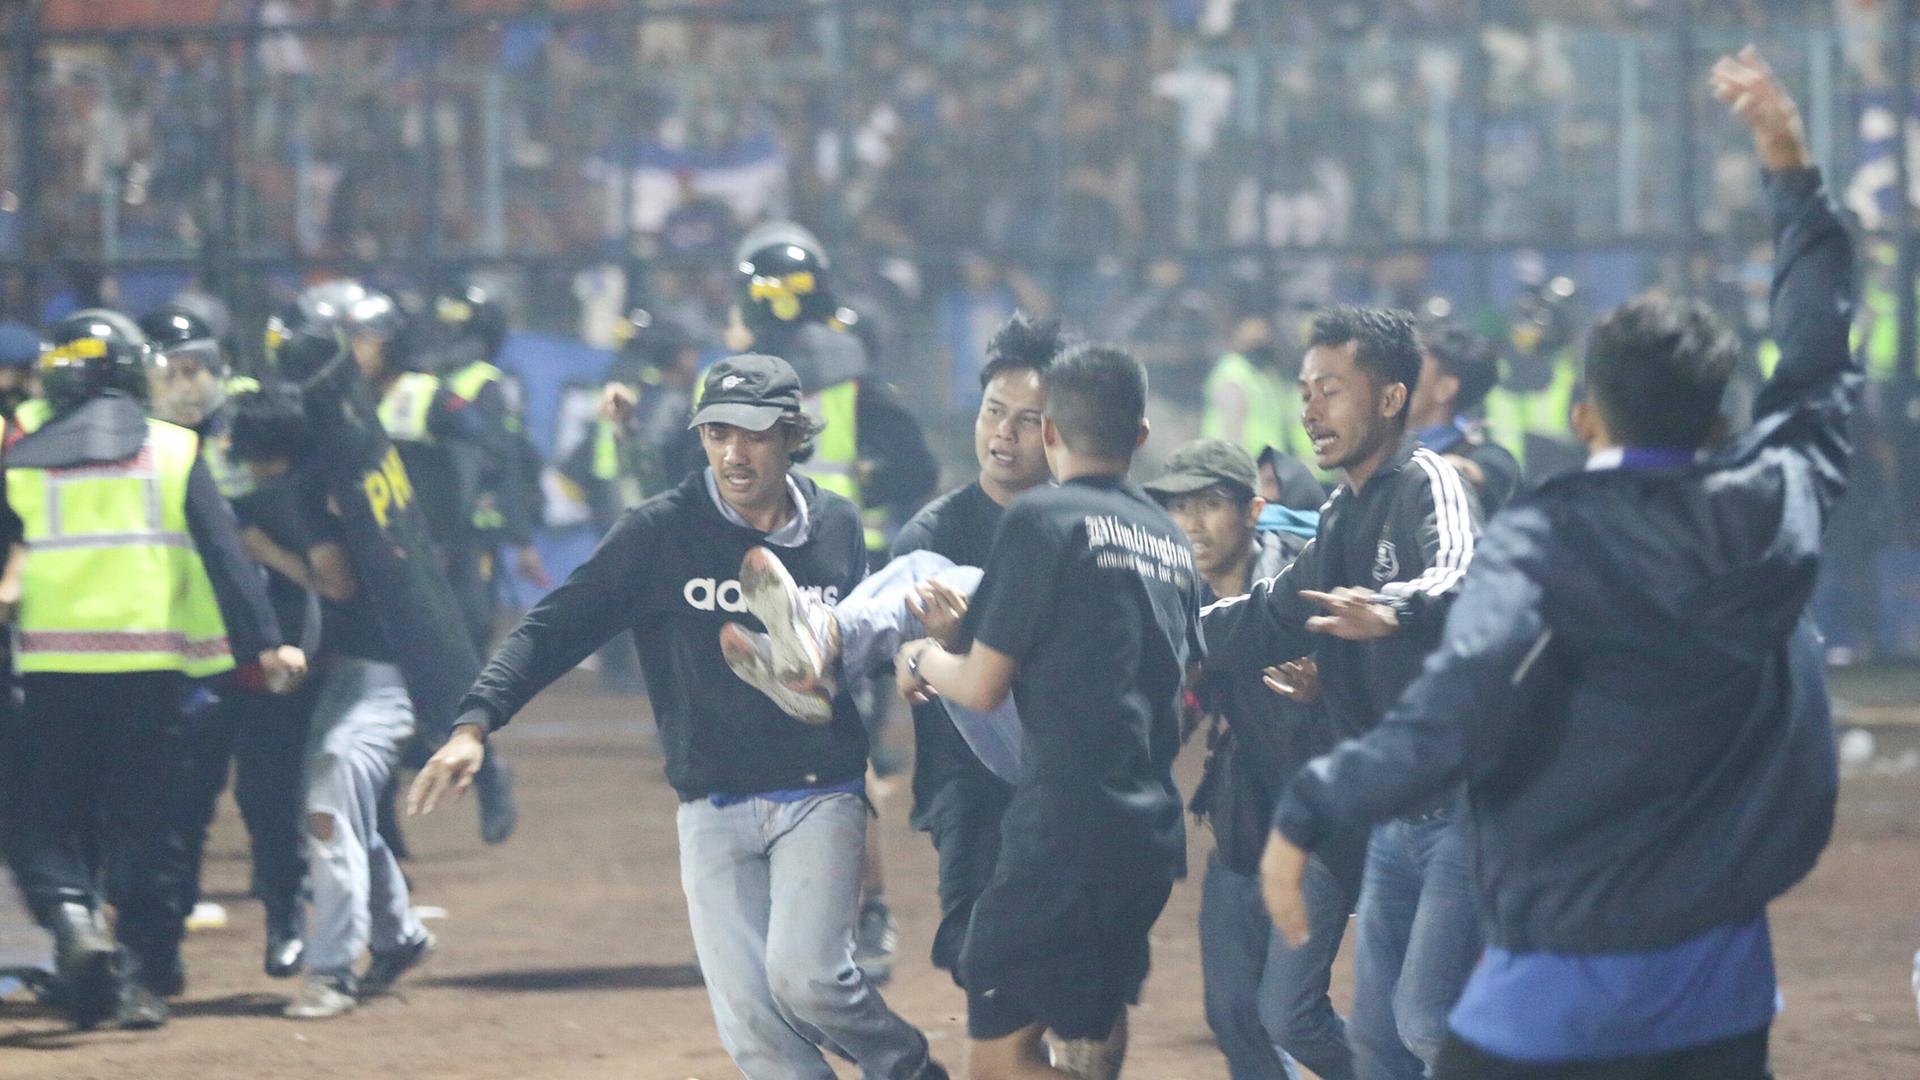 Bencana stadion di Indonesia – “Kami tidak siap menghadapi skenario seperti itu”